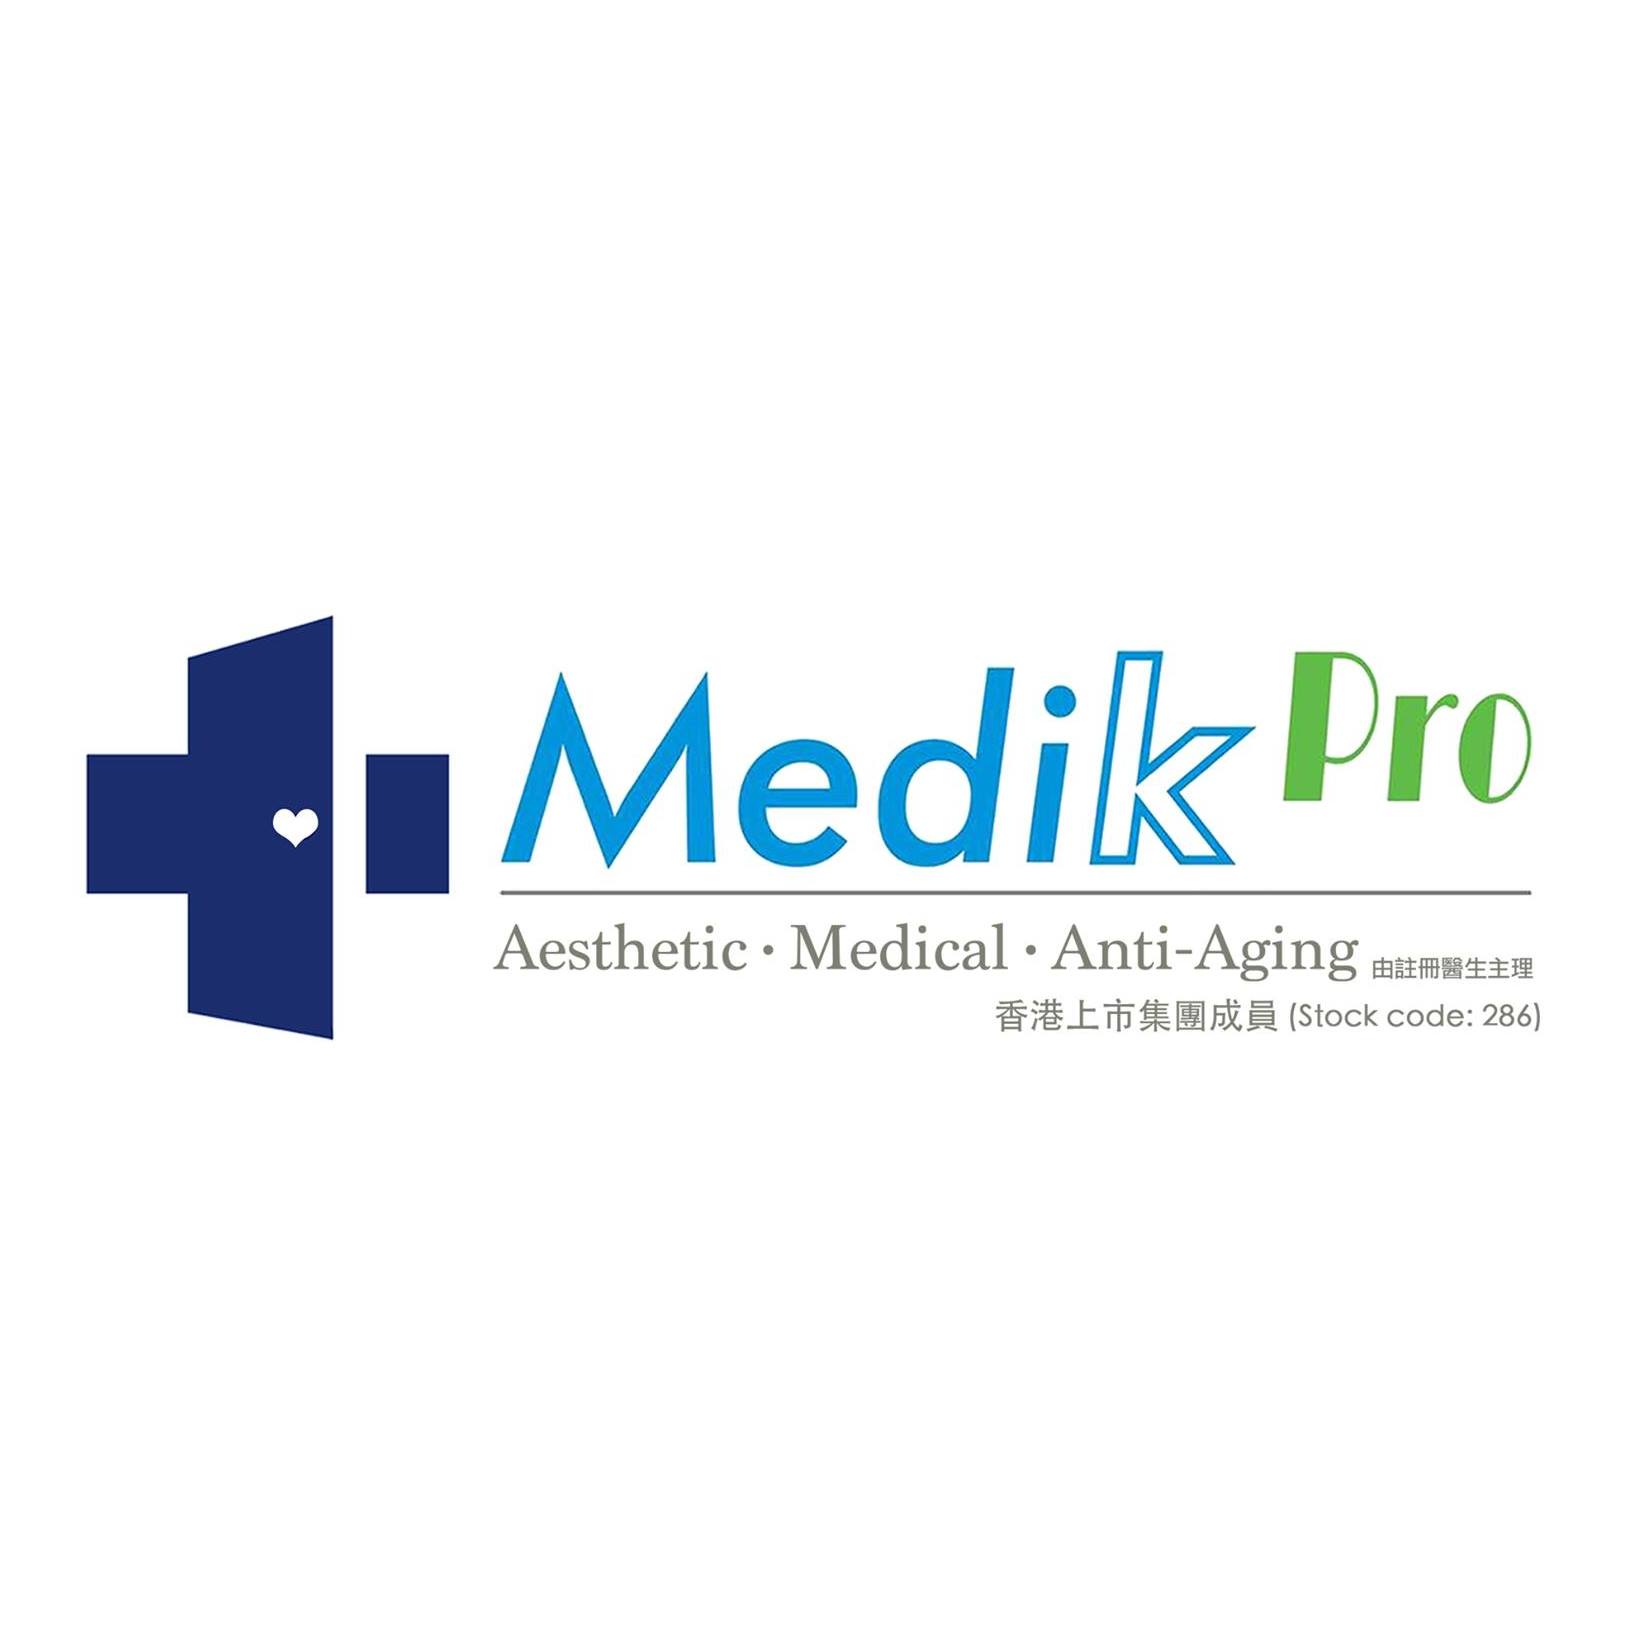 光學美容: Medik Pro (佐敦分店)